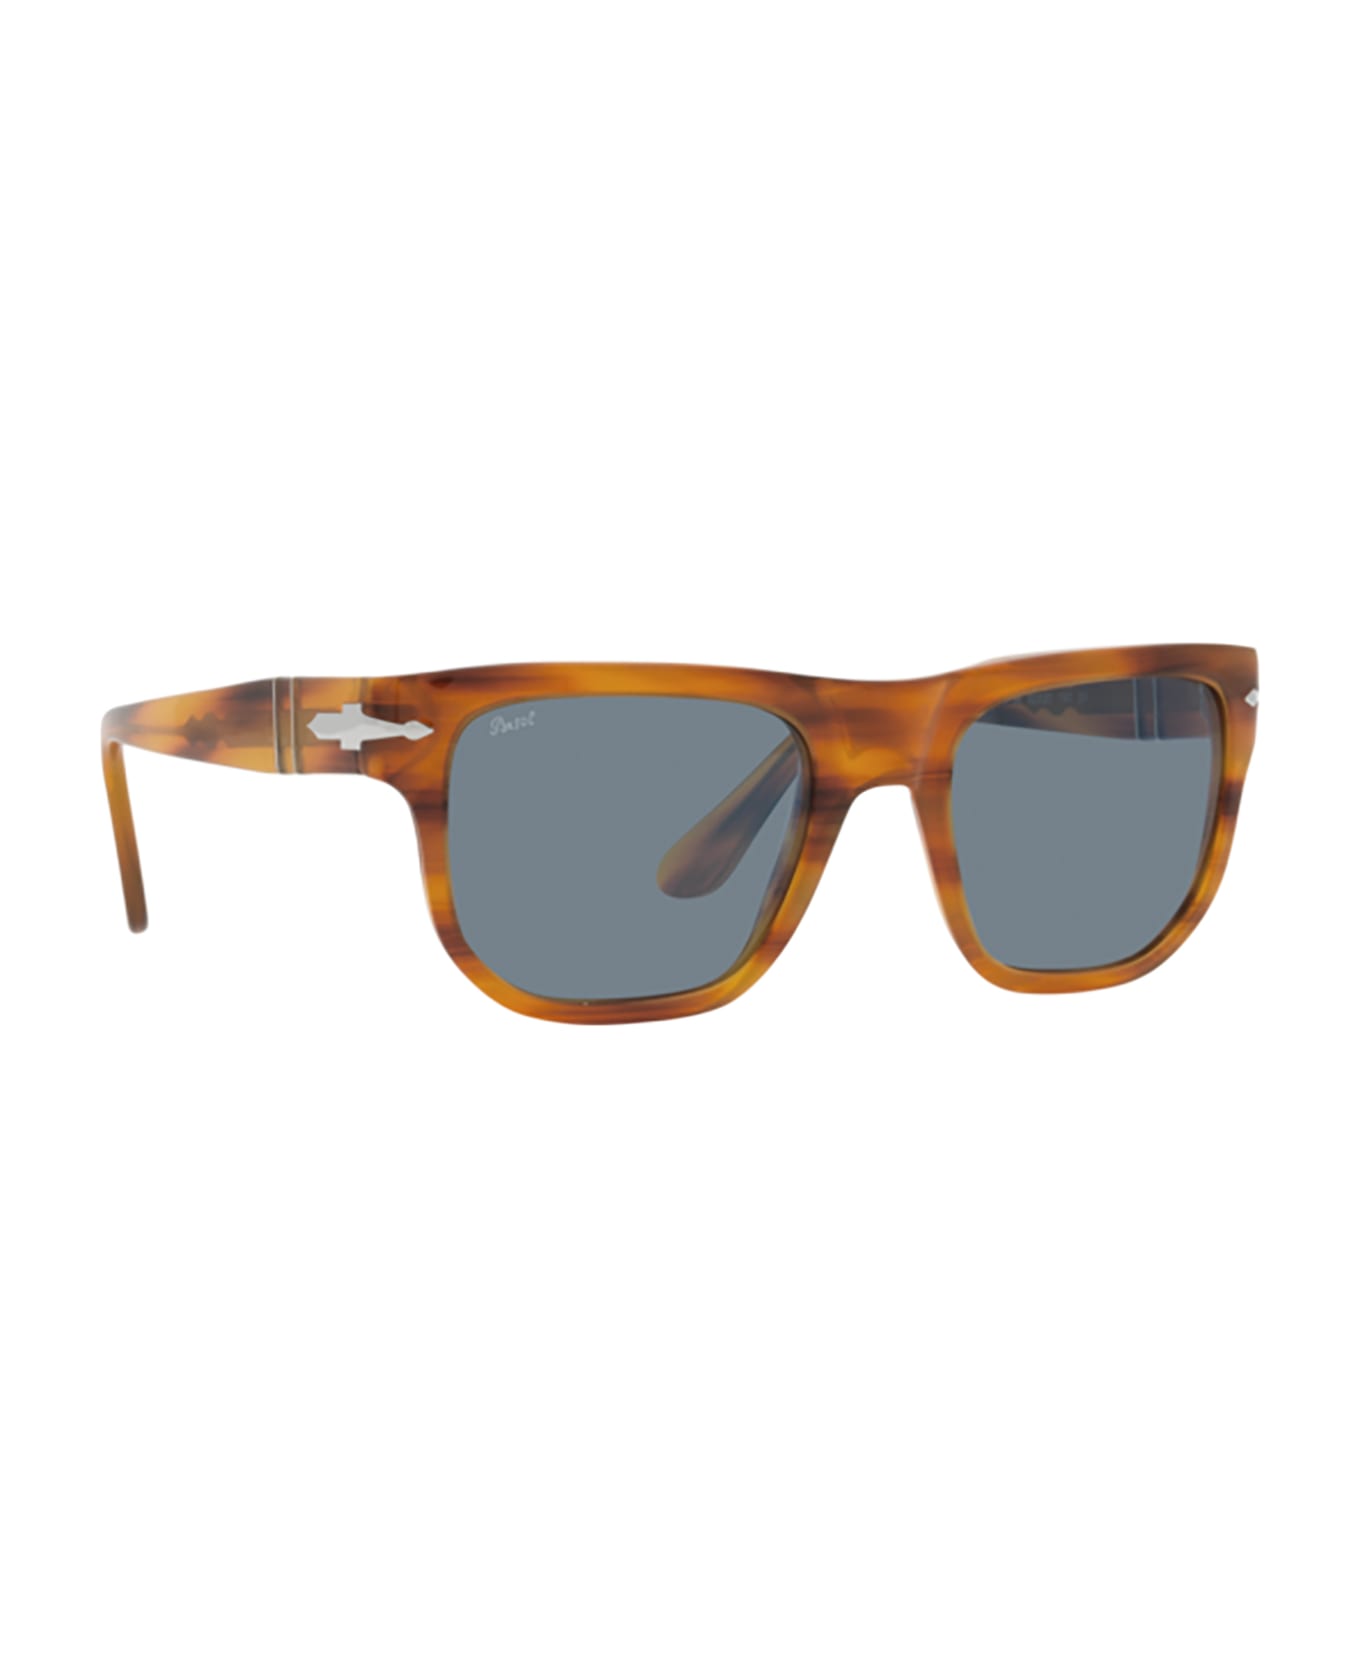 Persol Po3306s Striped Brown Sunglasses - Striped Brown